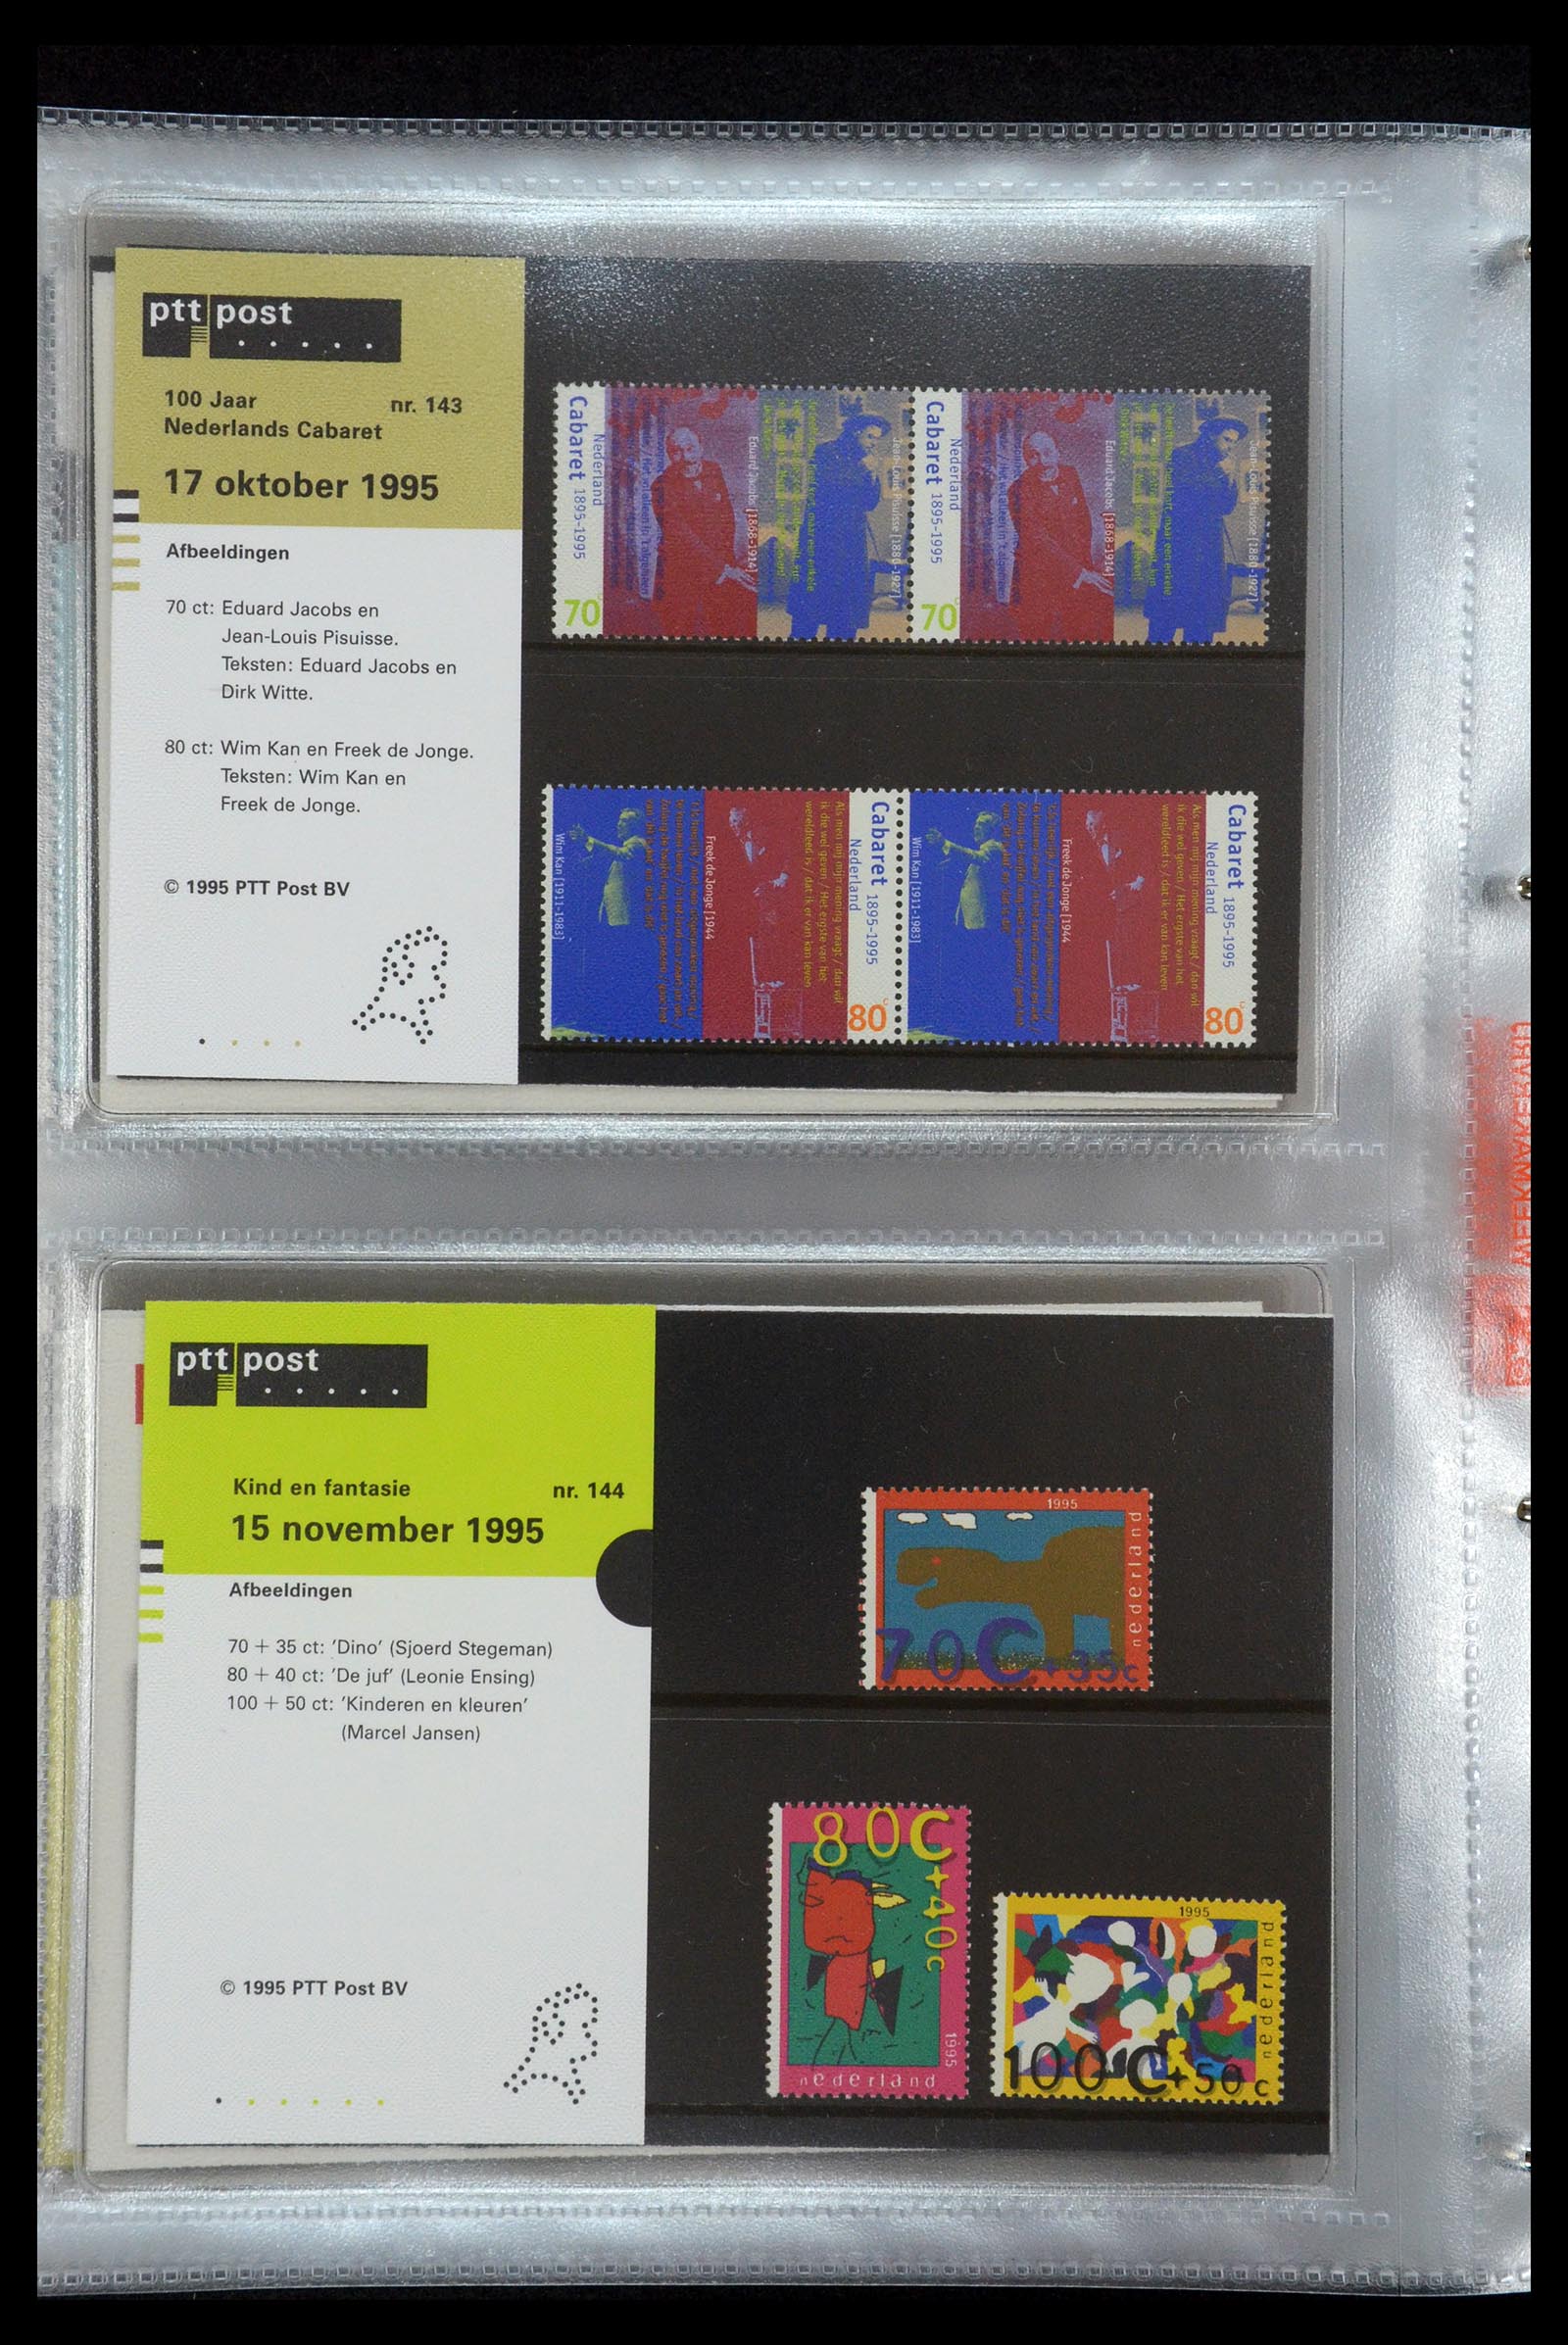 35144 075 - Stamp Collection 35144 Netherlands PTT presentation packs 1982-2021!